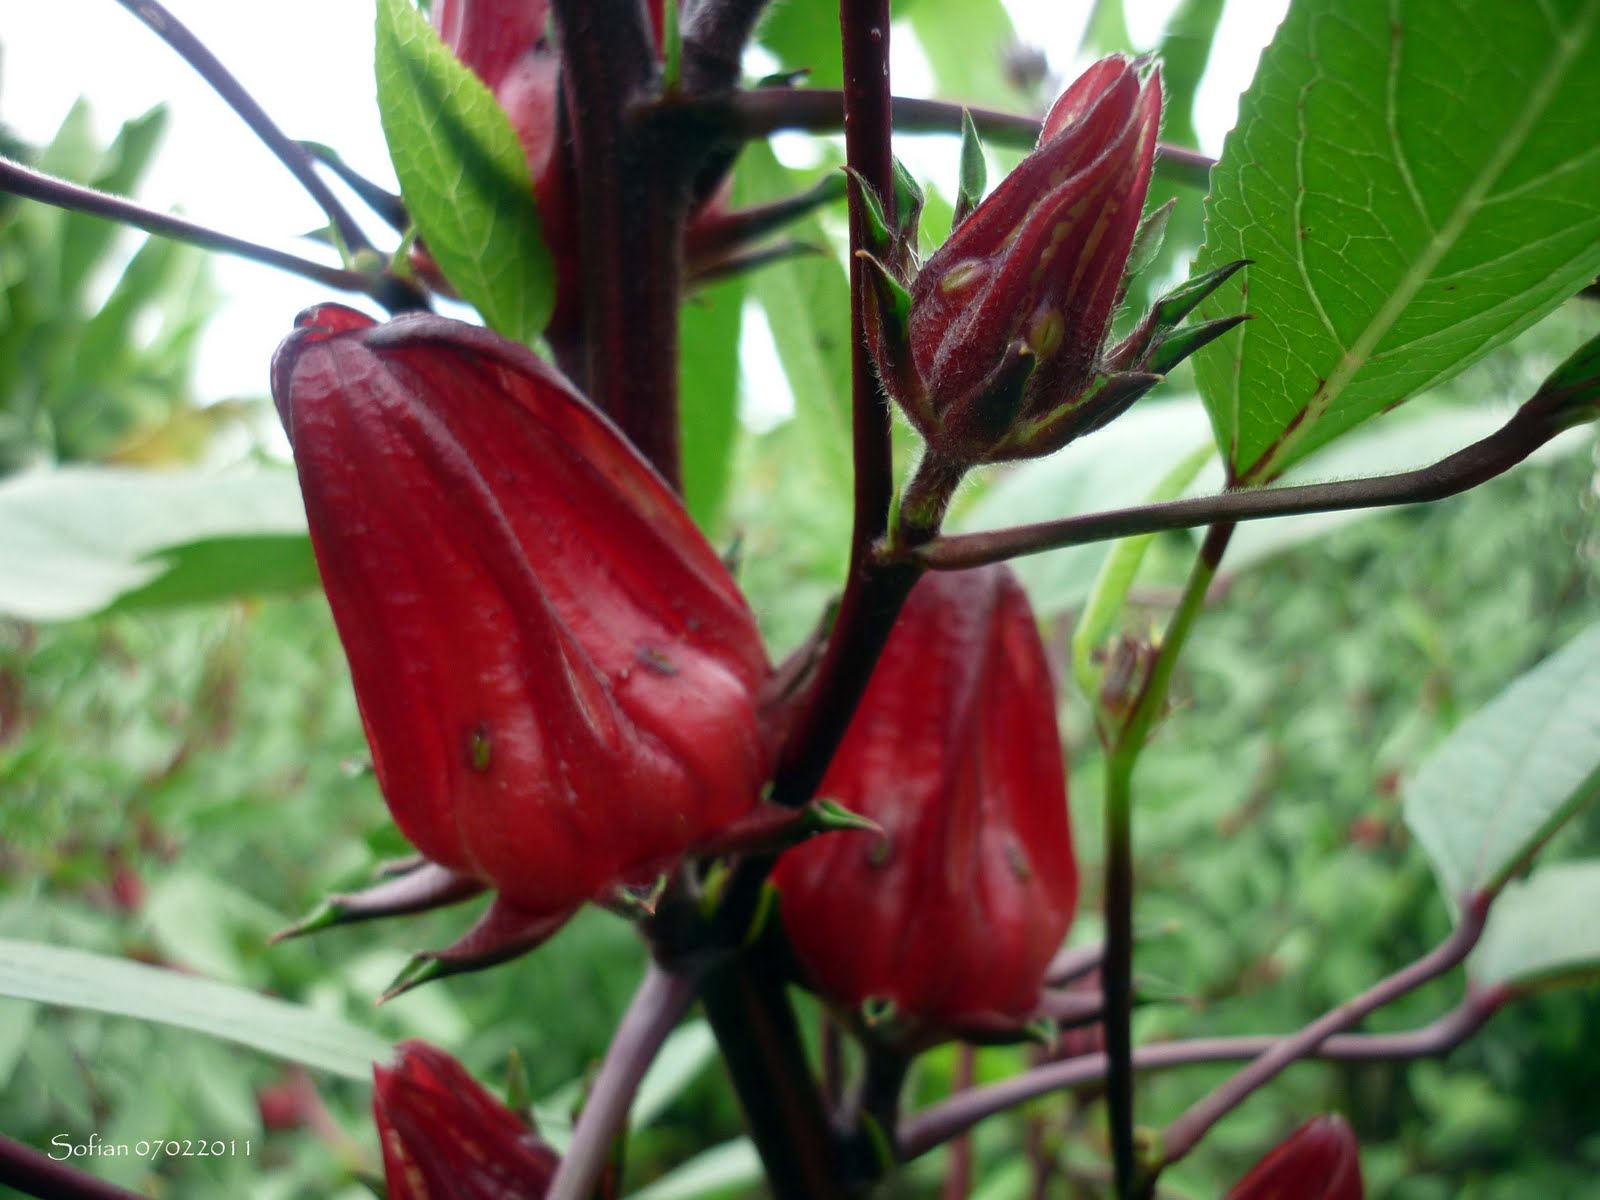 sabdariffa adalah jenis tanaman herbal yang dikenal sebagai tanaman 